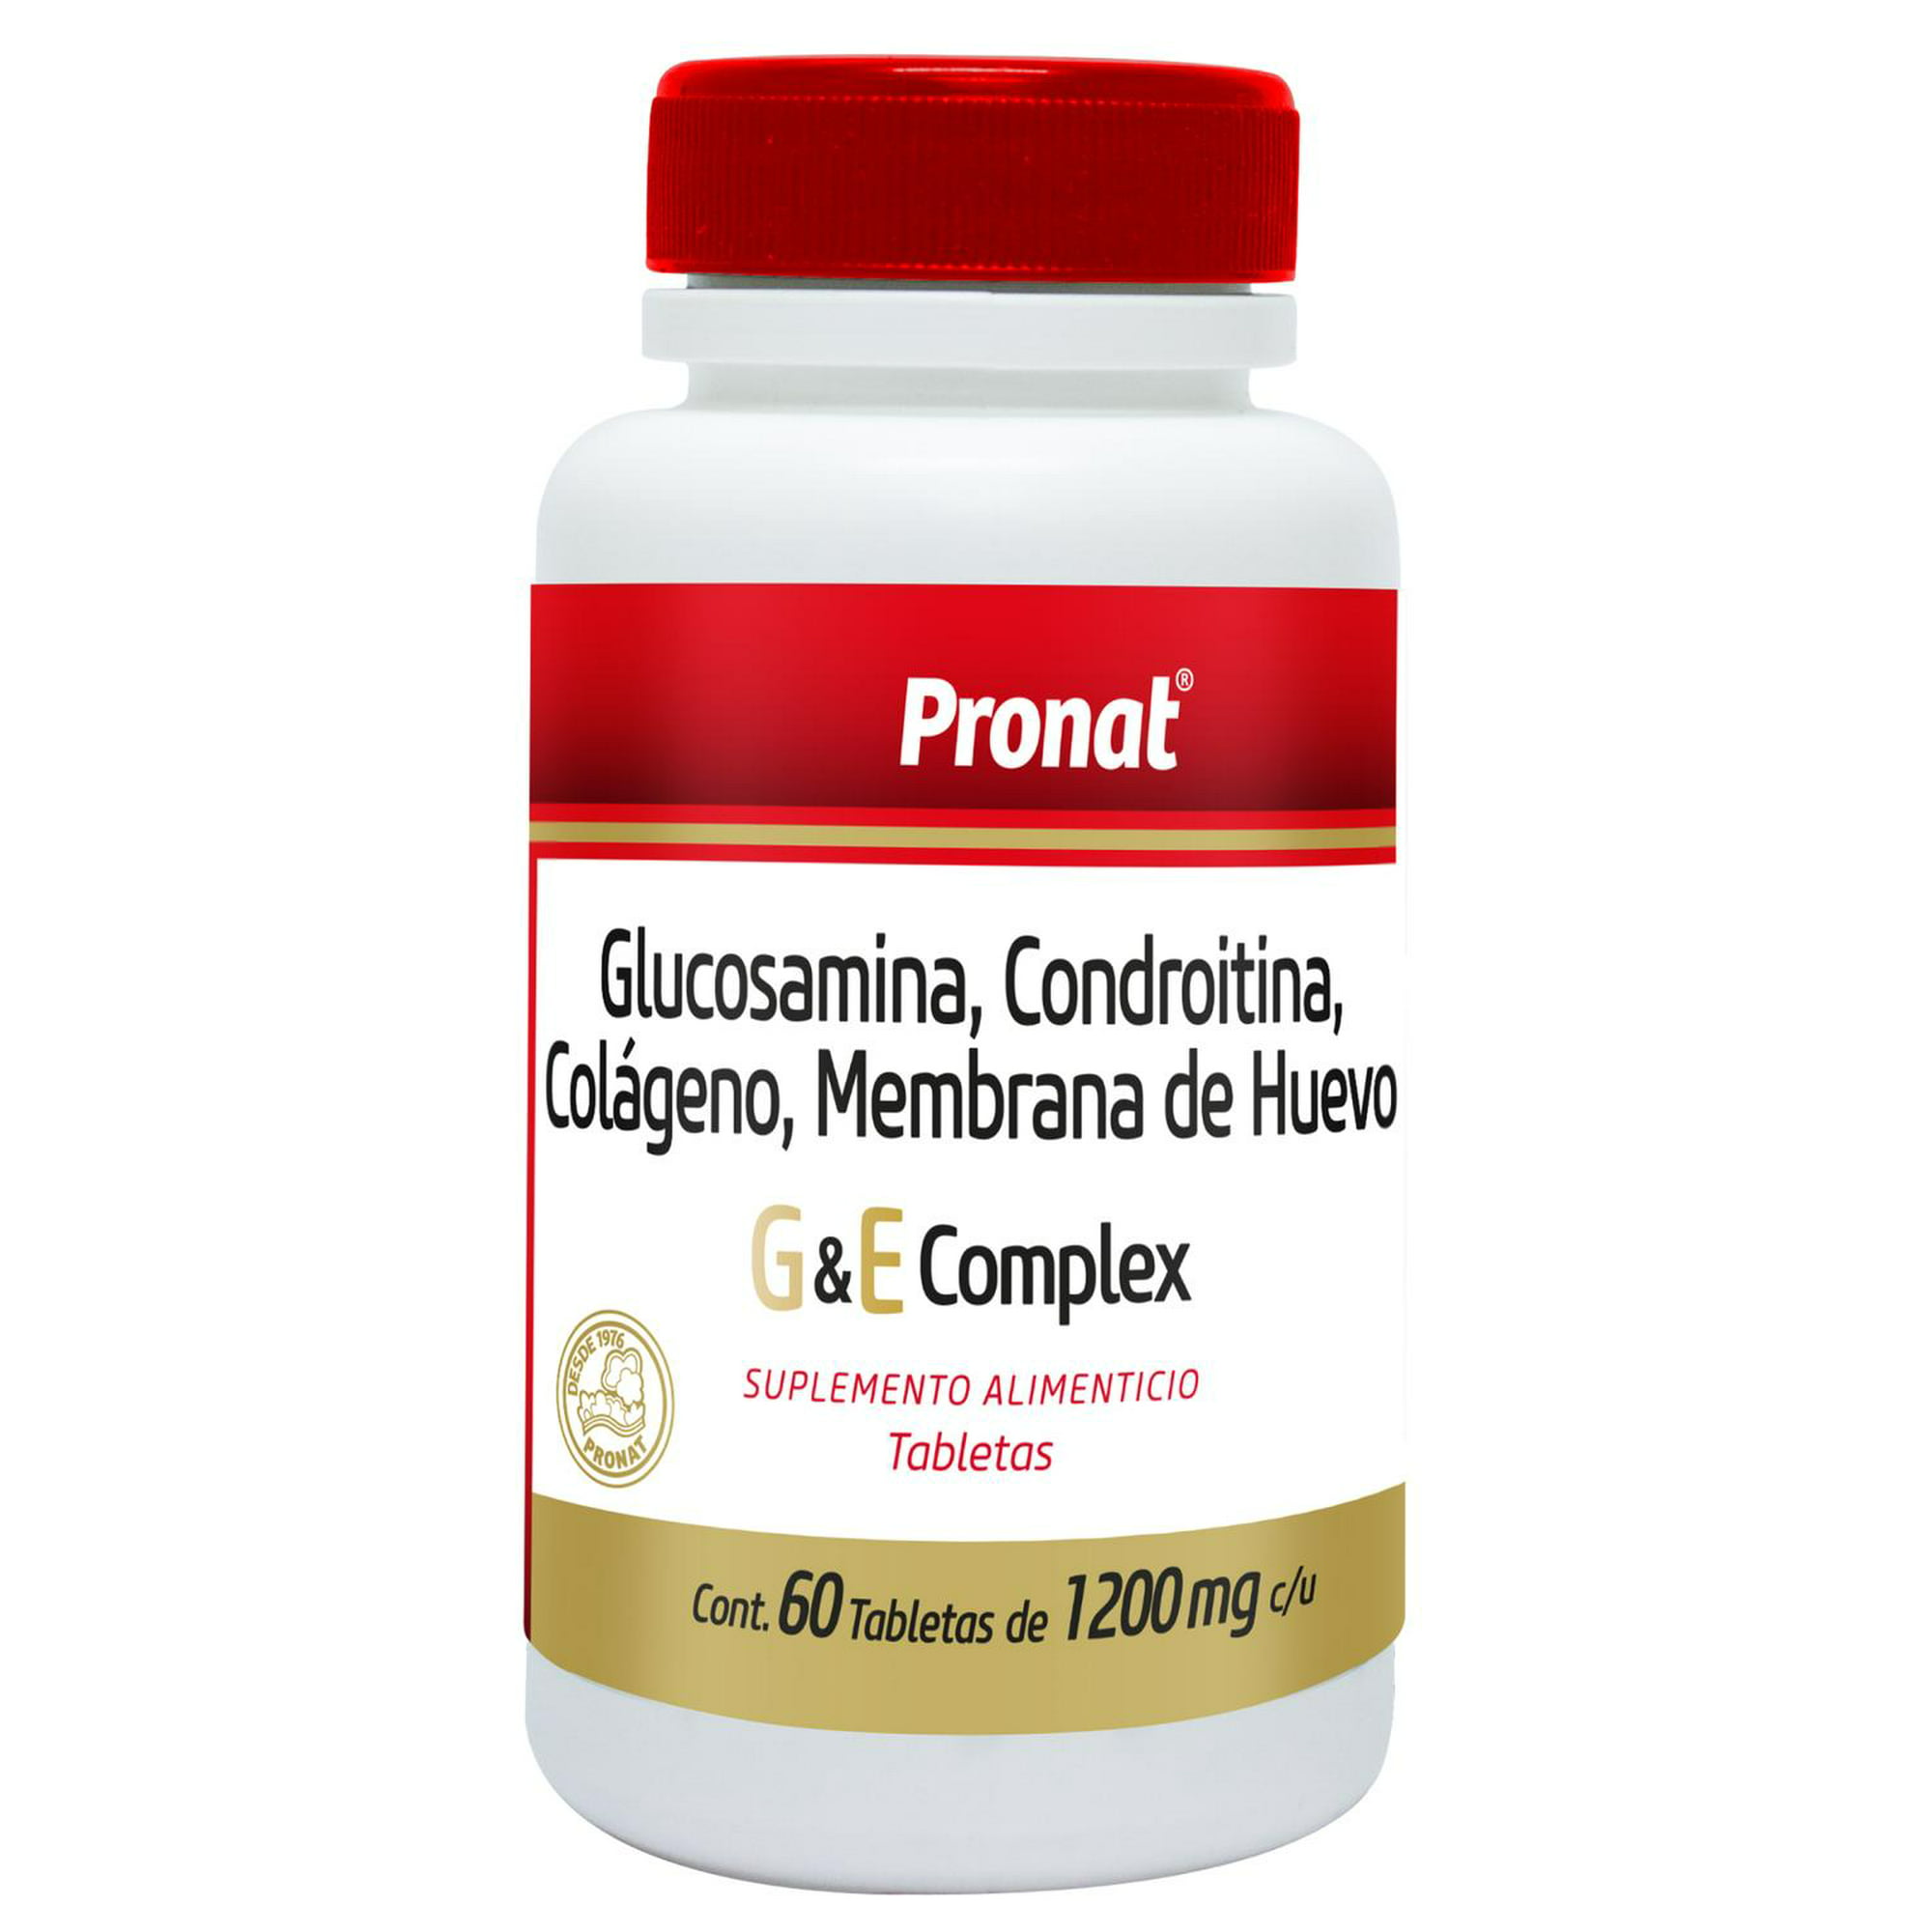 Glucosamina, Condroitina, Colágeno G y E Complex 60 tabs Pronat Pronat  PRONATGYECOMPLEX